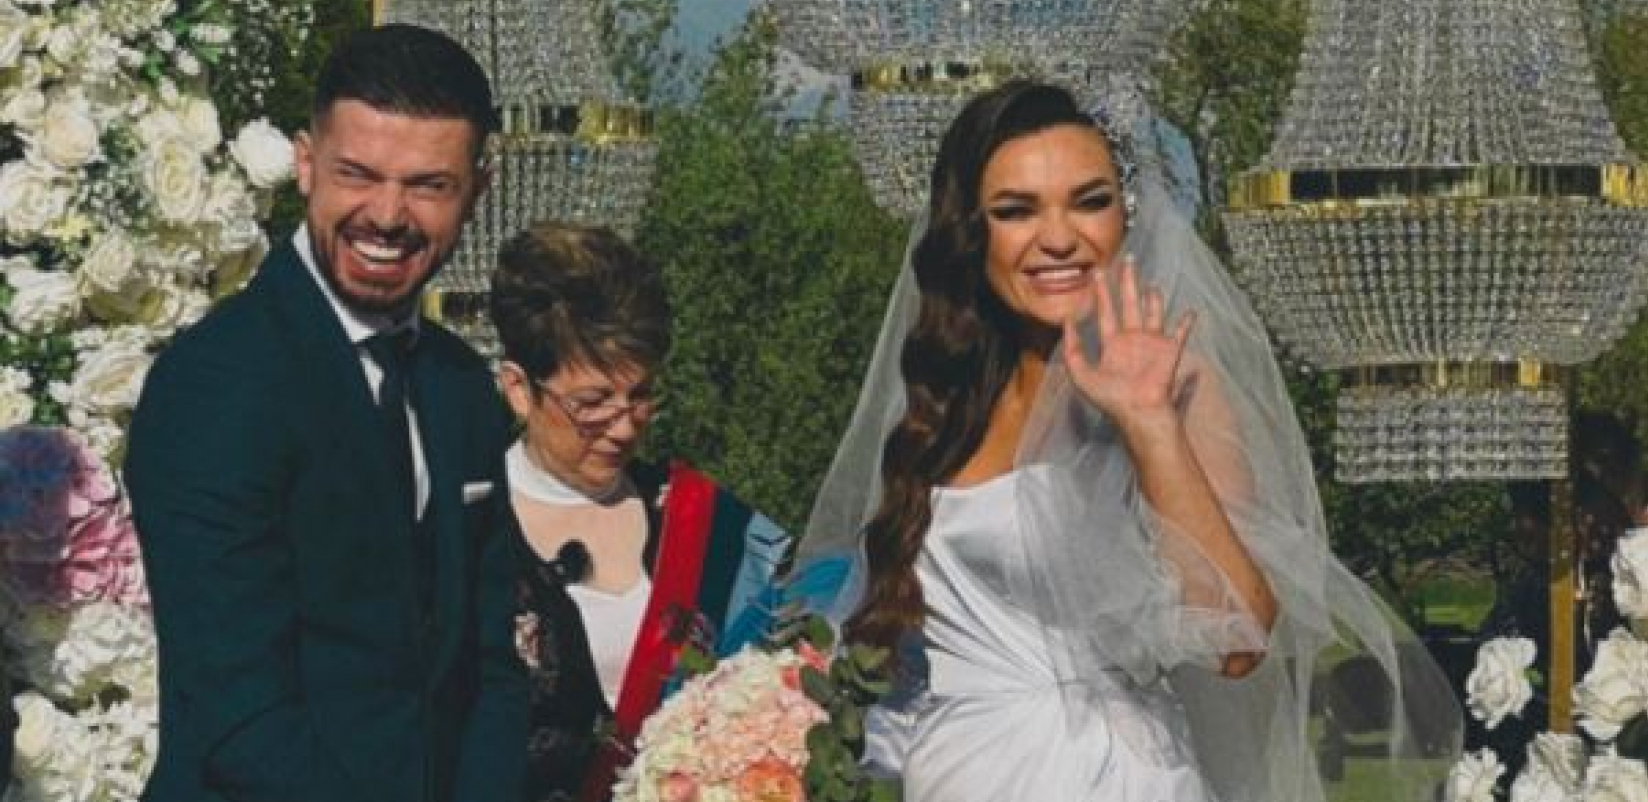 NA SVADBI OTKRILI POL BEBE Tamara Milutinović organizovala je tajno venčanje, a u jednom trenutku proleteo je avion koji je ispustio boju i iznenadio sve prisutne! (FOTO)